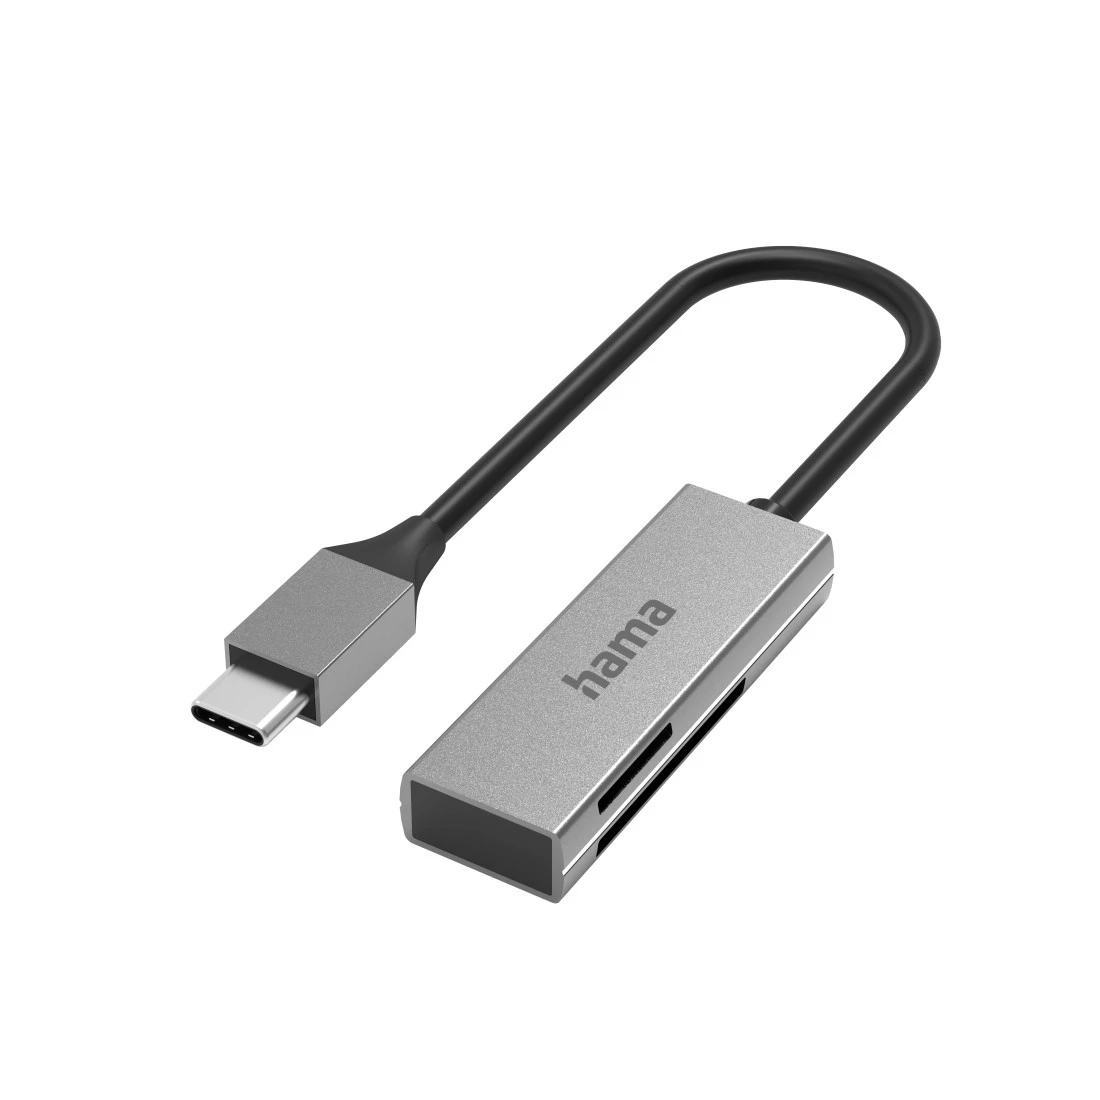 Lecteur de cartes USB, USB-C, USB 3.0, SD/microSD, Alu